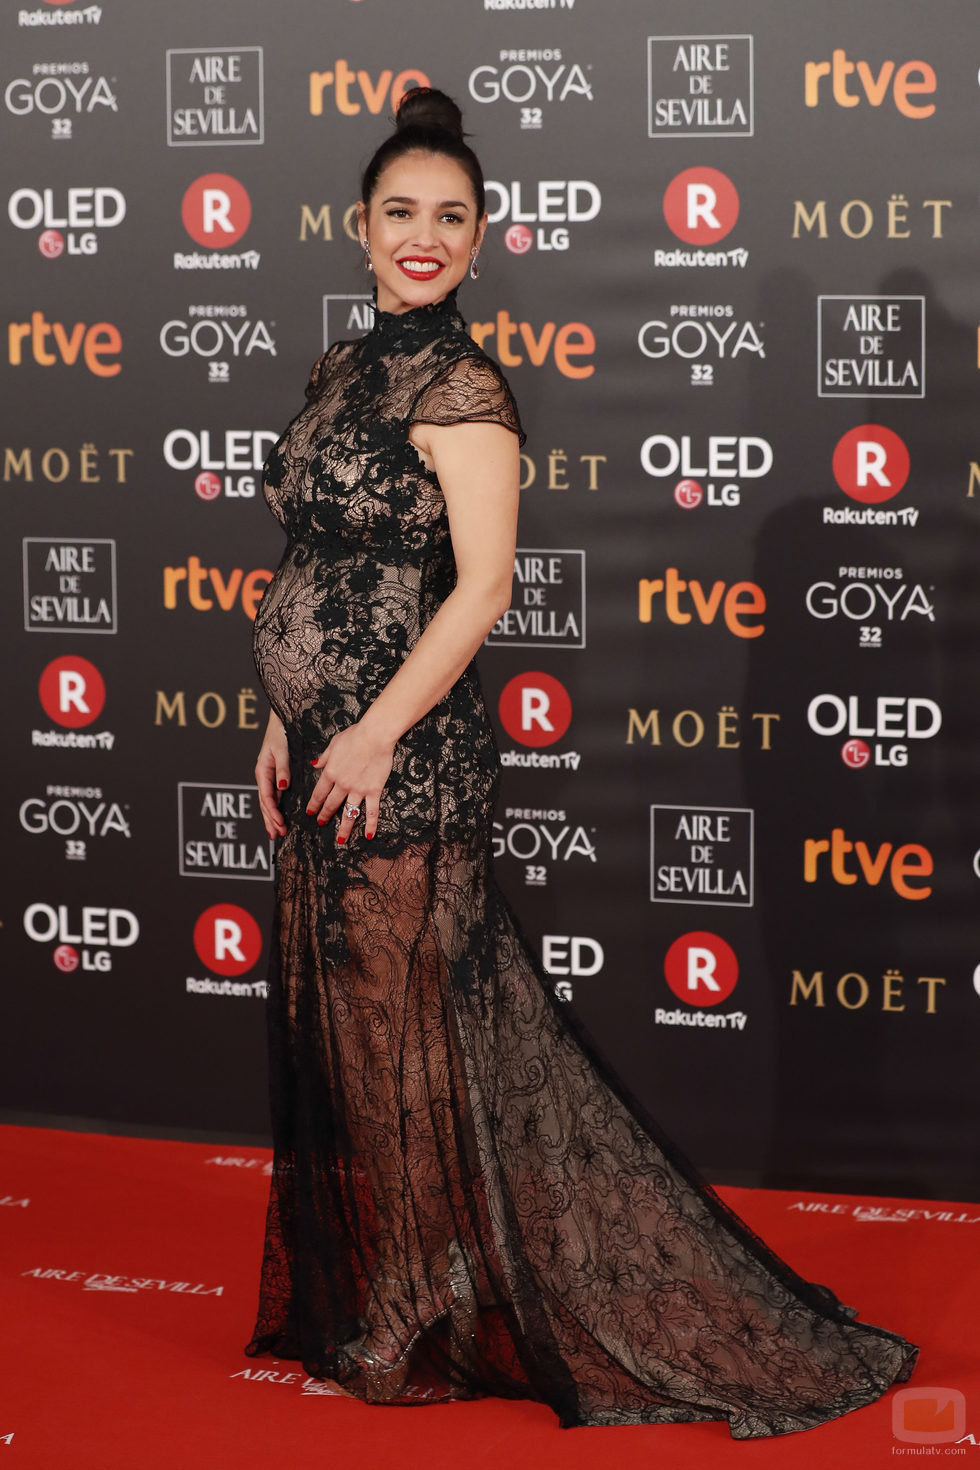 Cristina Brondo posa en la alfombra roja de los Premios Goya 2018